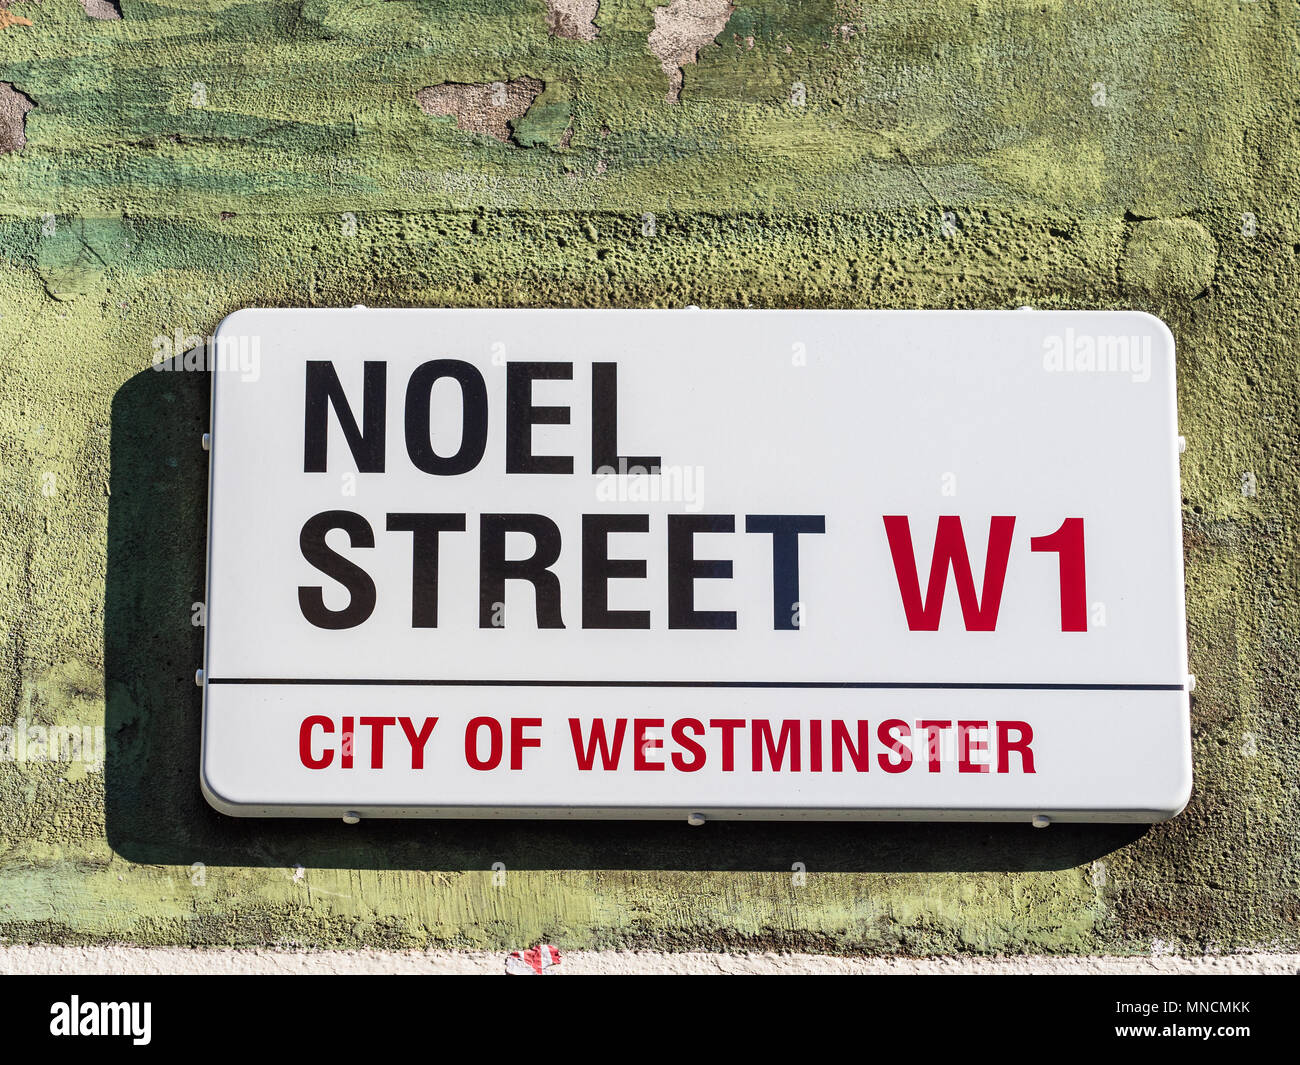 Soho Straßenschilder Serie - Noel Street, London Soho Straßenschilder Stockfoto